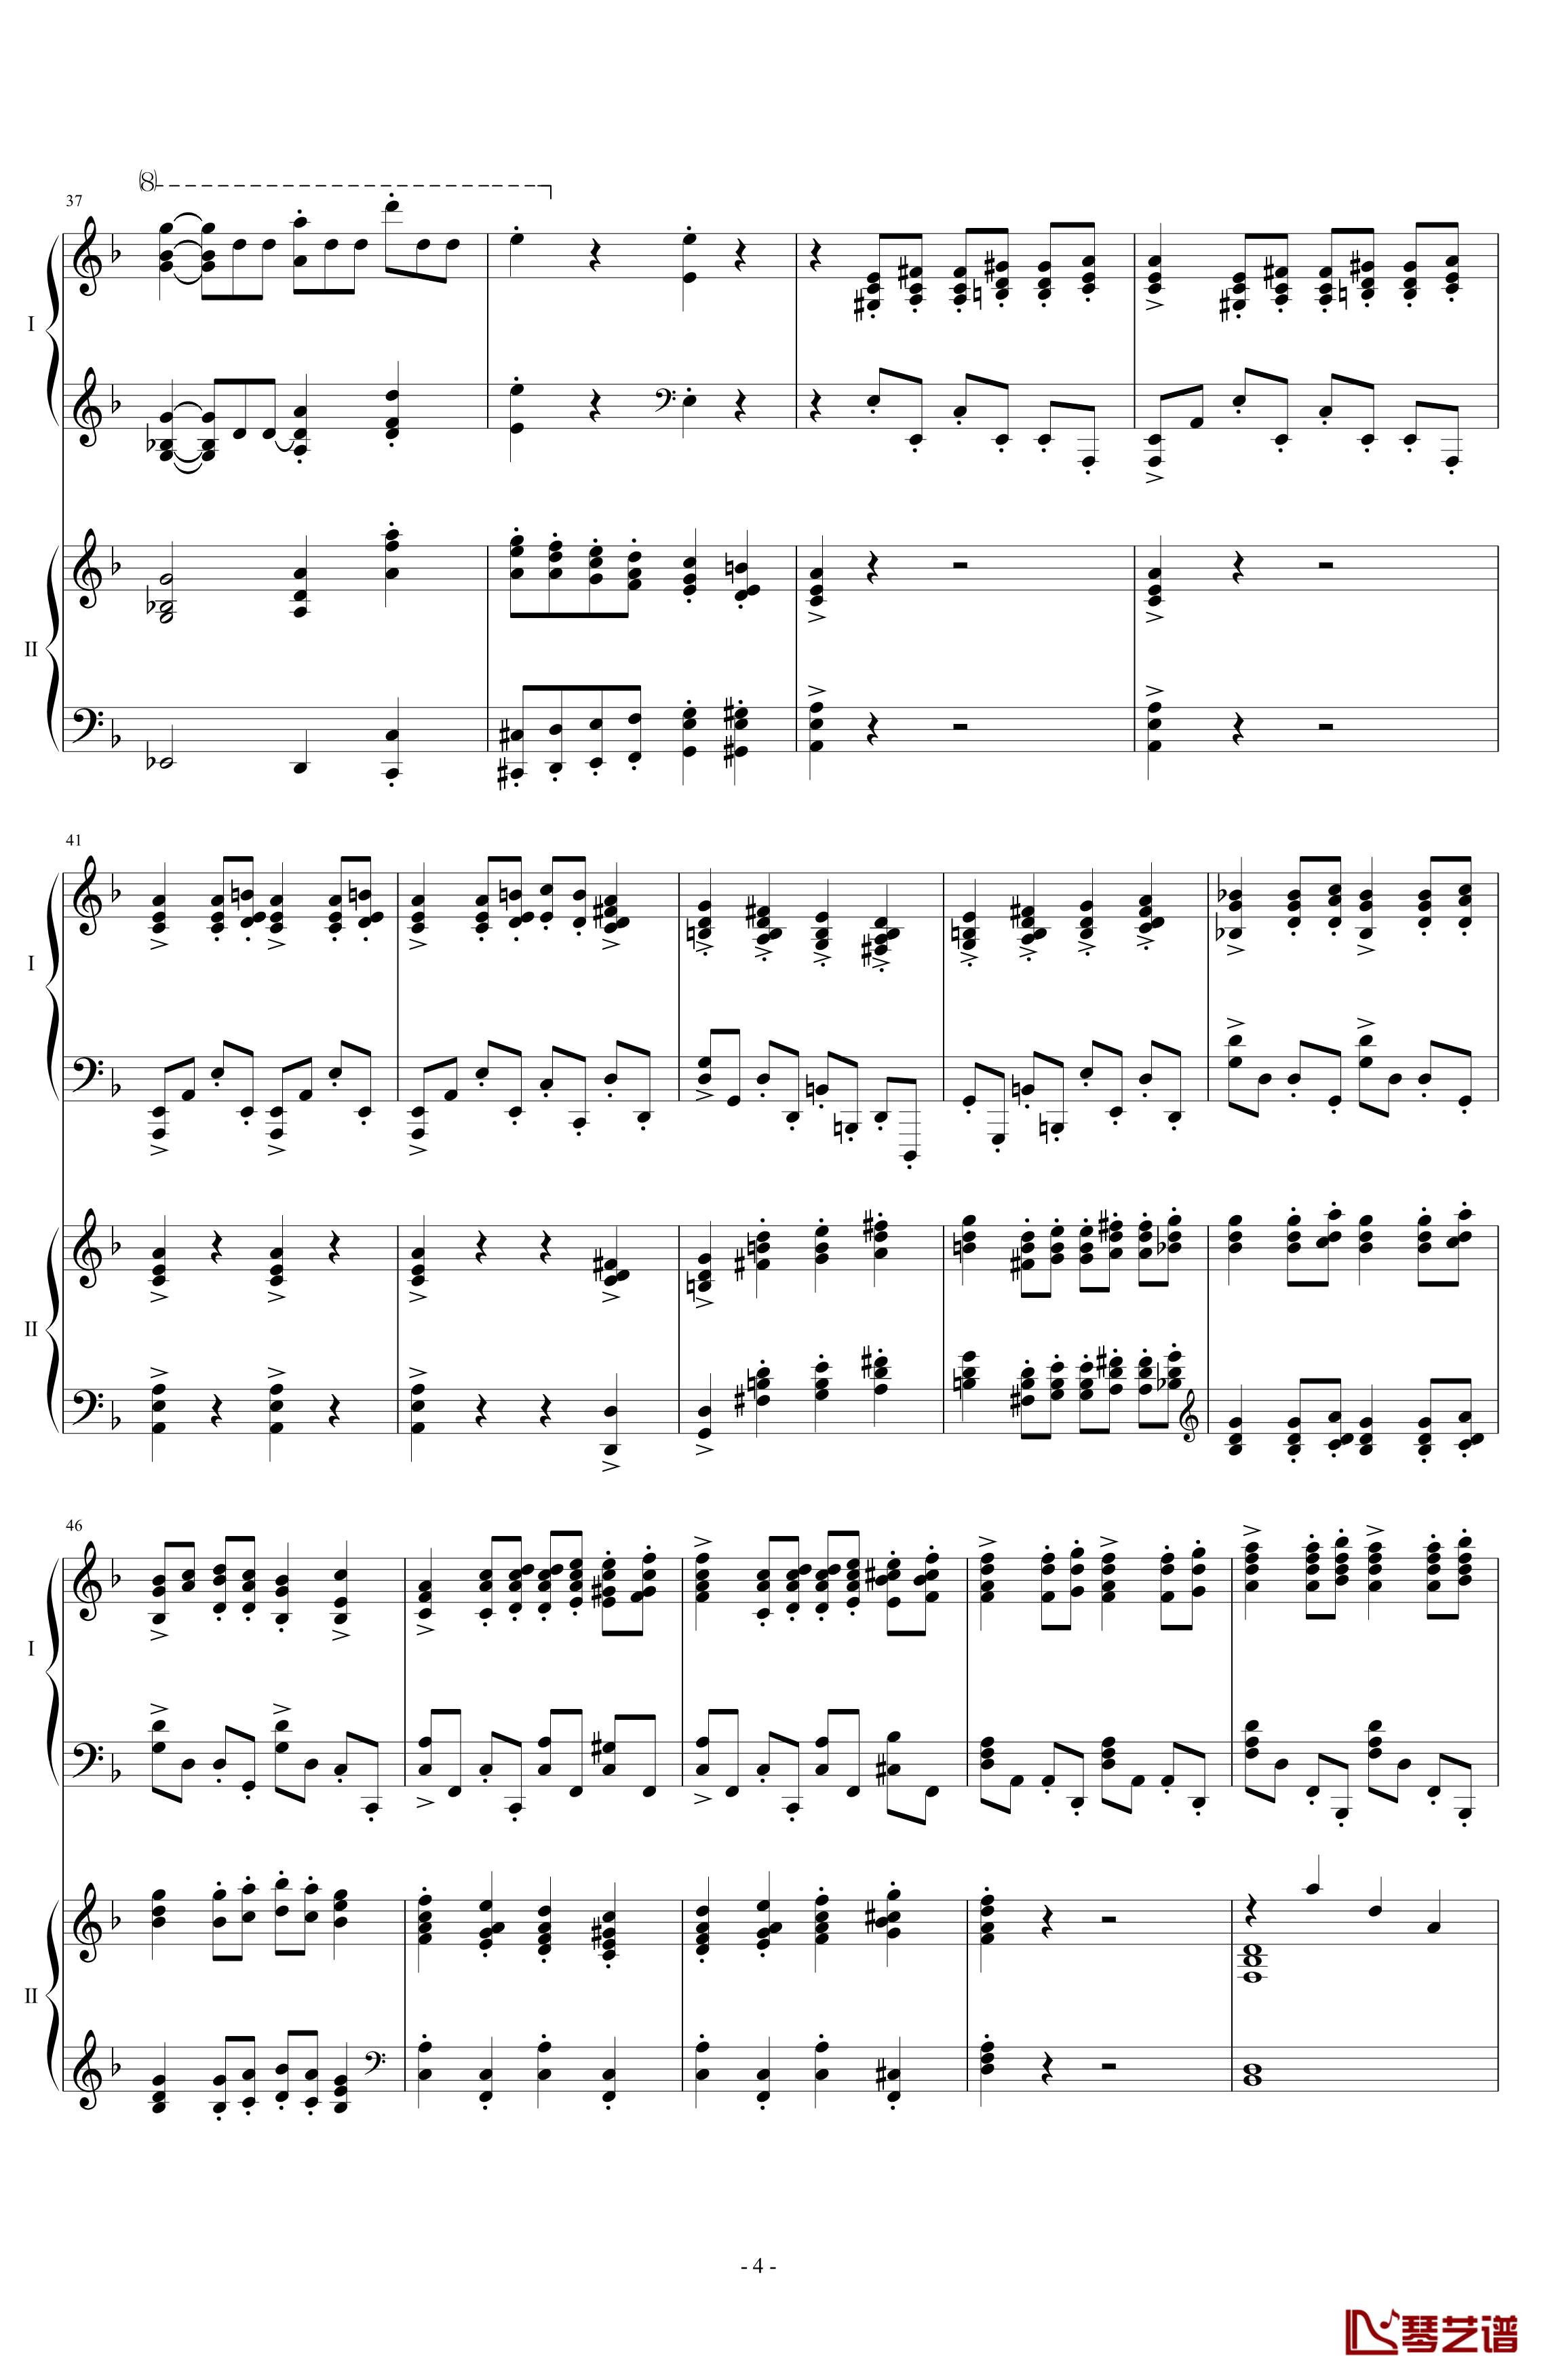 拉三第三乐章41页双钢琴钢琴谱-最难钢琴曲-拉赫马尼若夫4